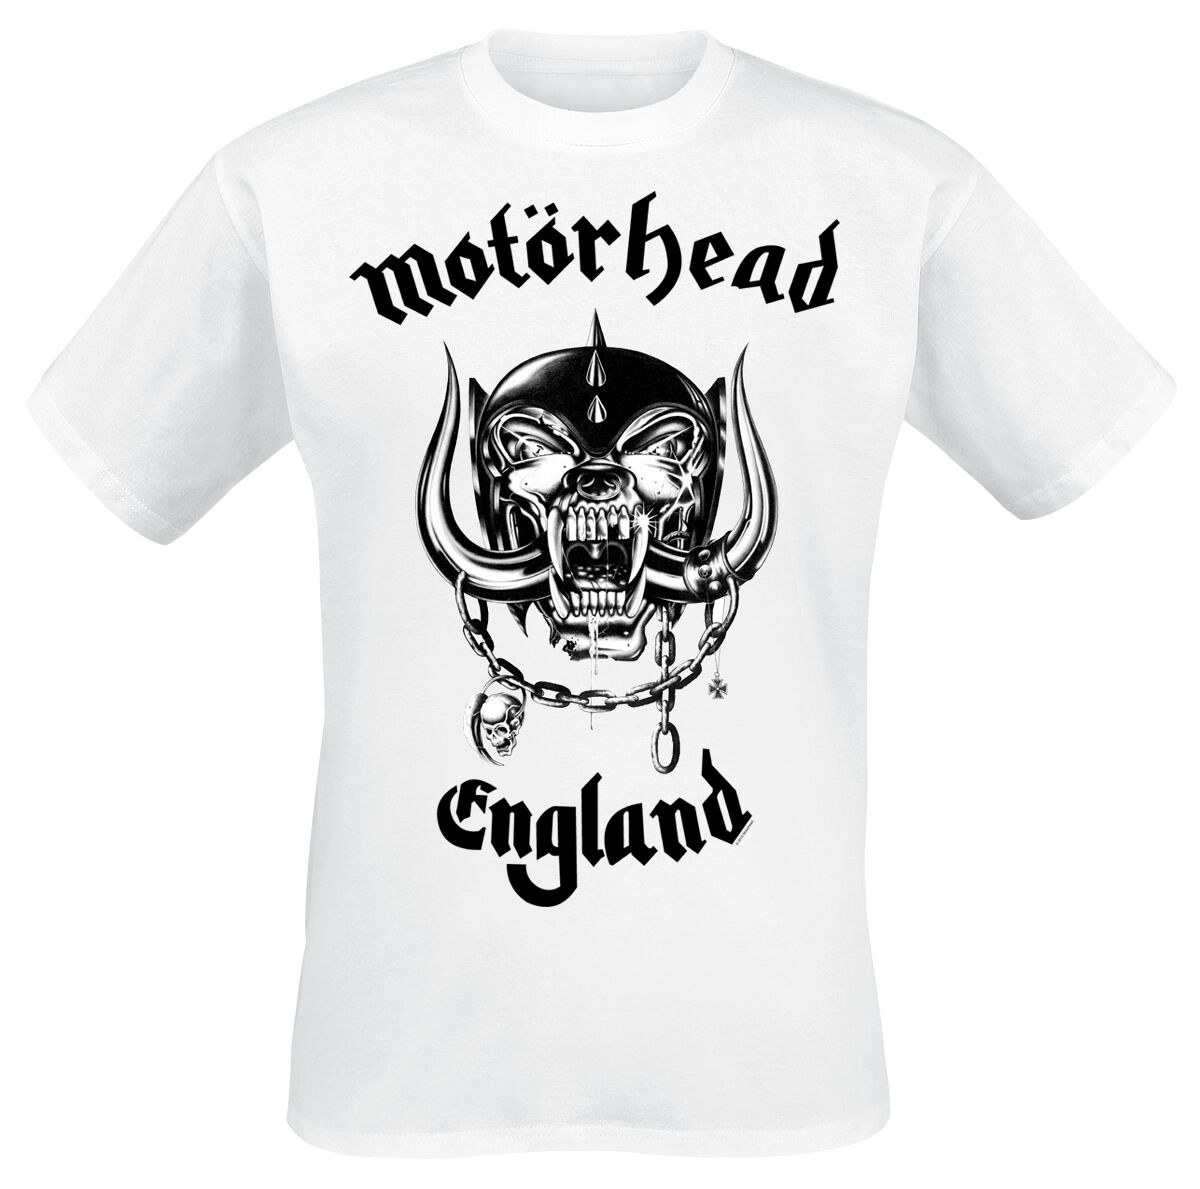 Motörhead T-Shirt - England - S bis XXL - für Männer - Größe S - weiß  - Lizenziertes Merchandise!